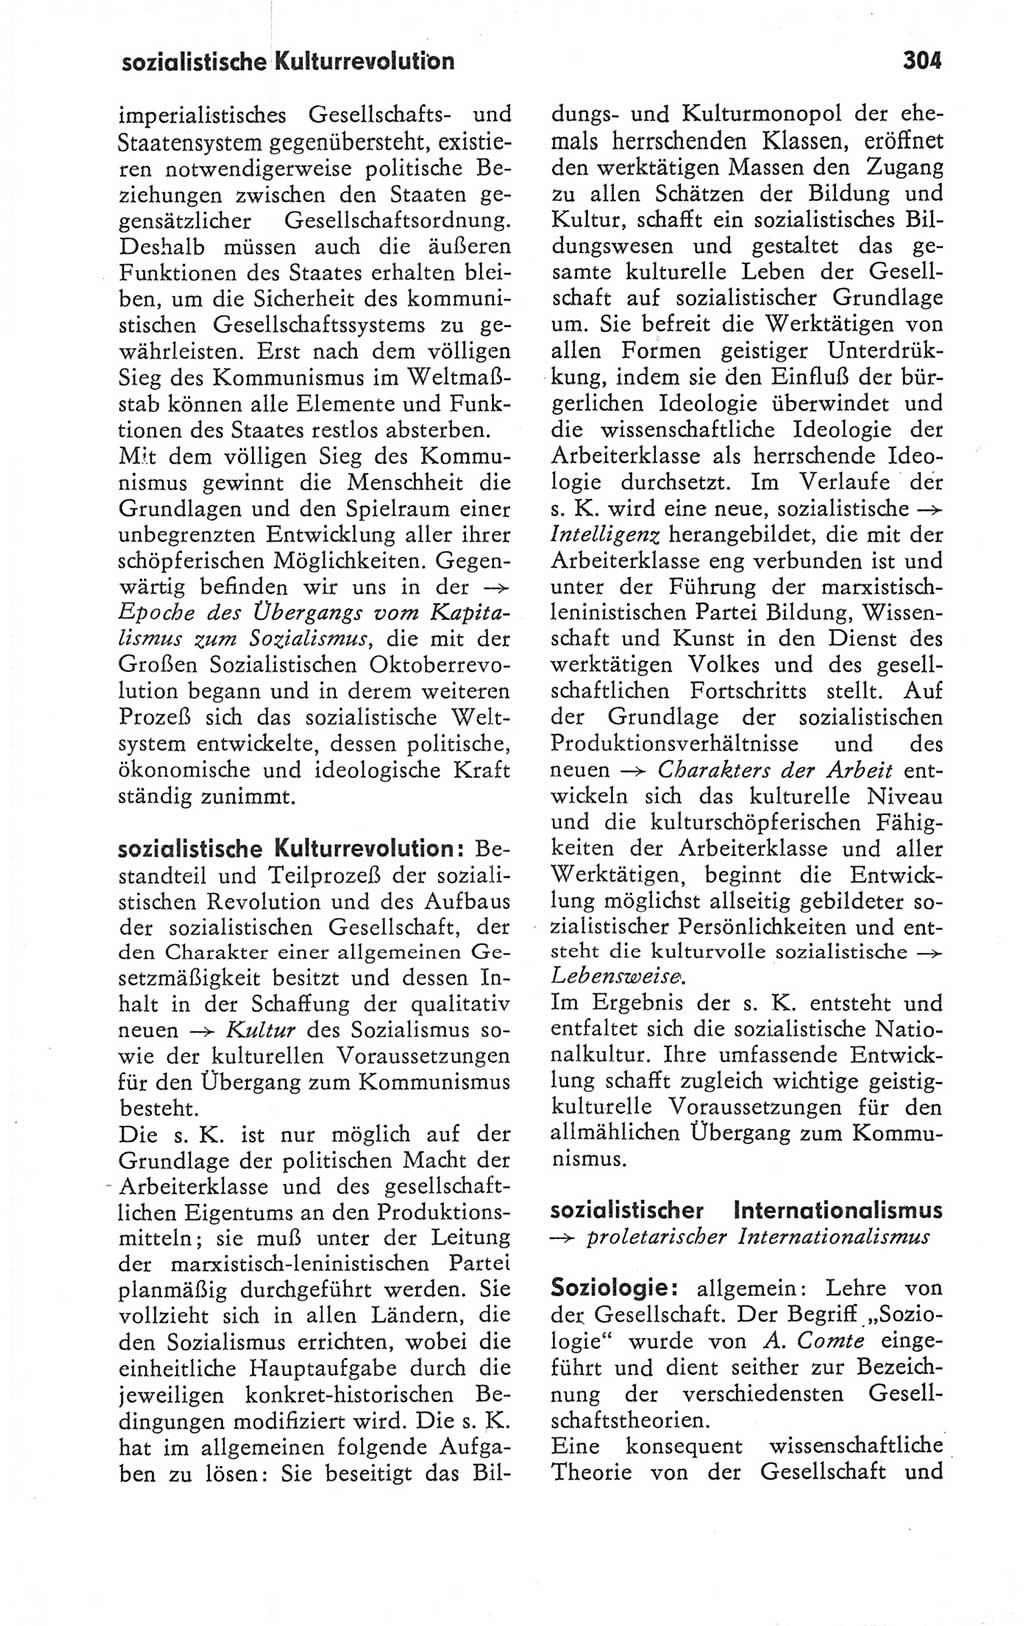 Kleines Wörterbuch der marxistisch-leninistischen Philosophie [Deutsche Demokratische Republik (DDR)] 1979, Seite 304 (Kl. Wb. ML Phil. DDR 1979, S. 304)